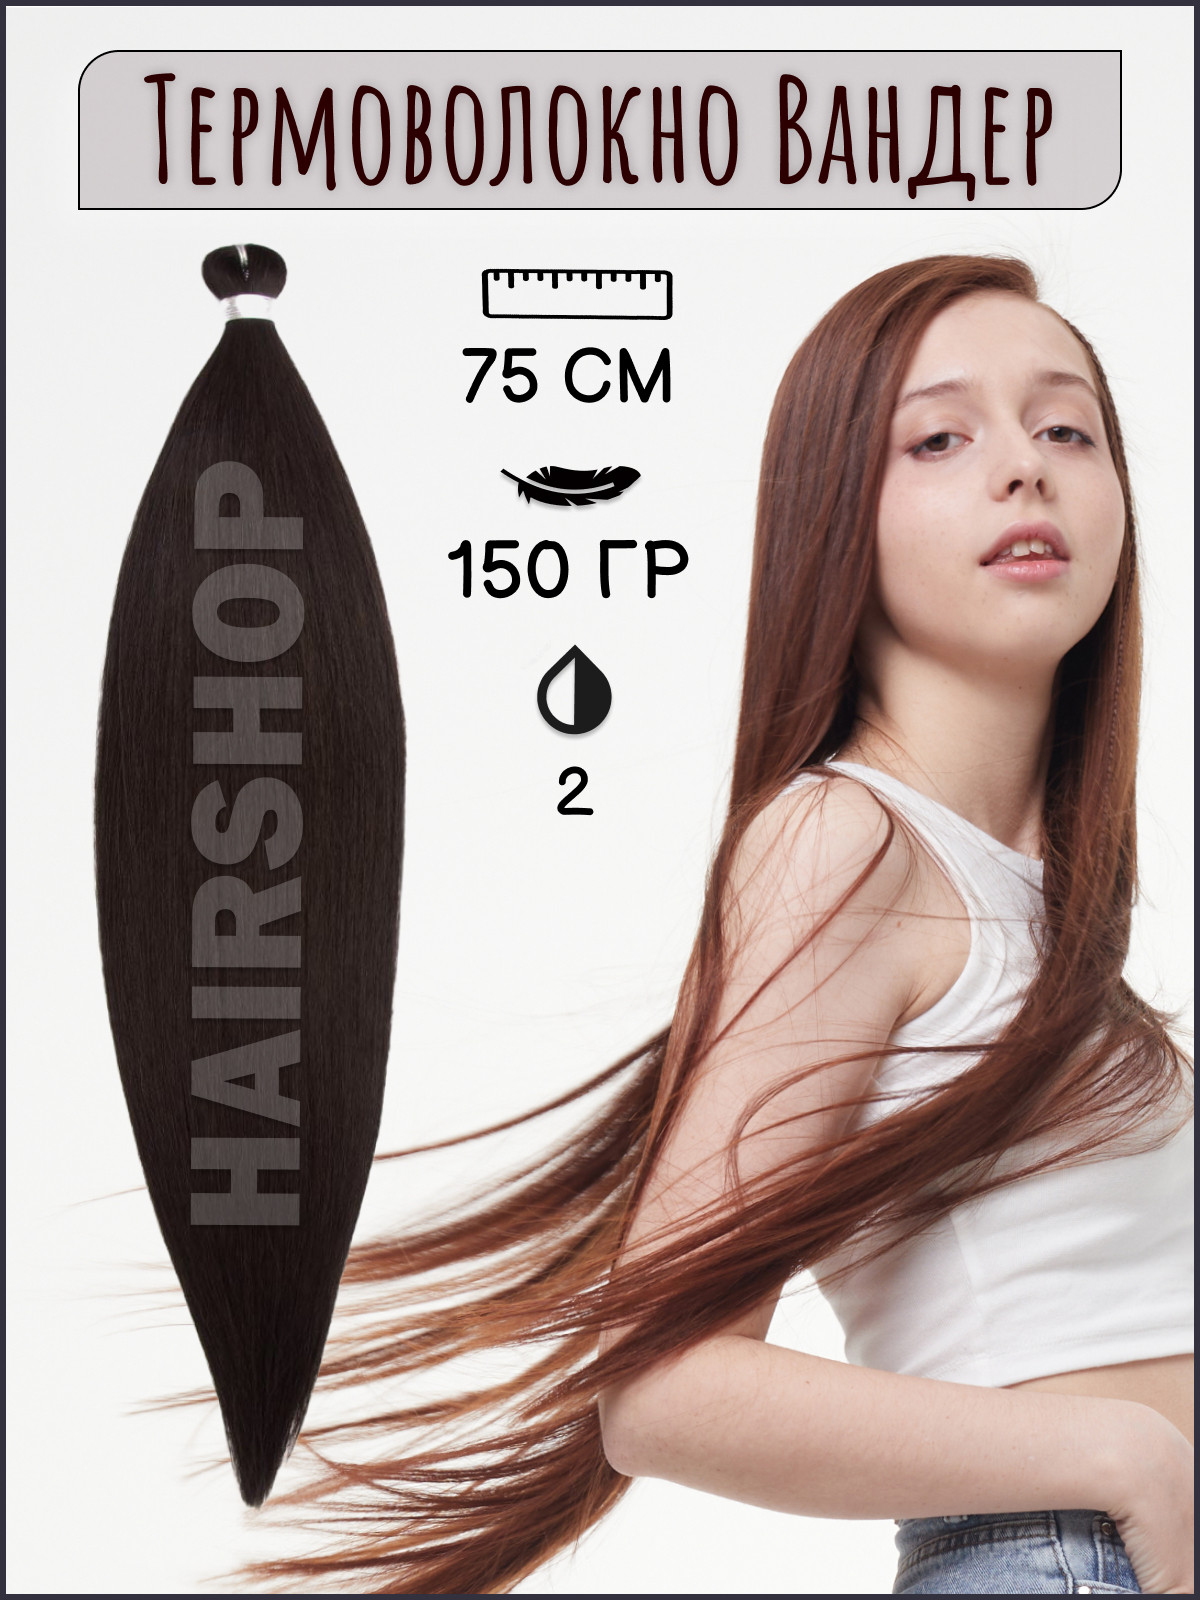 Термоволокно для наращивания Hairshop Вандер 2 150г 150см китай полная история